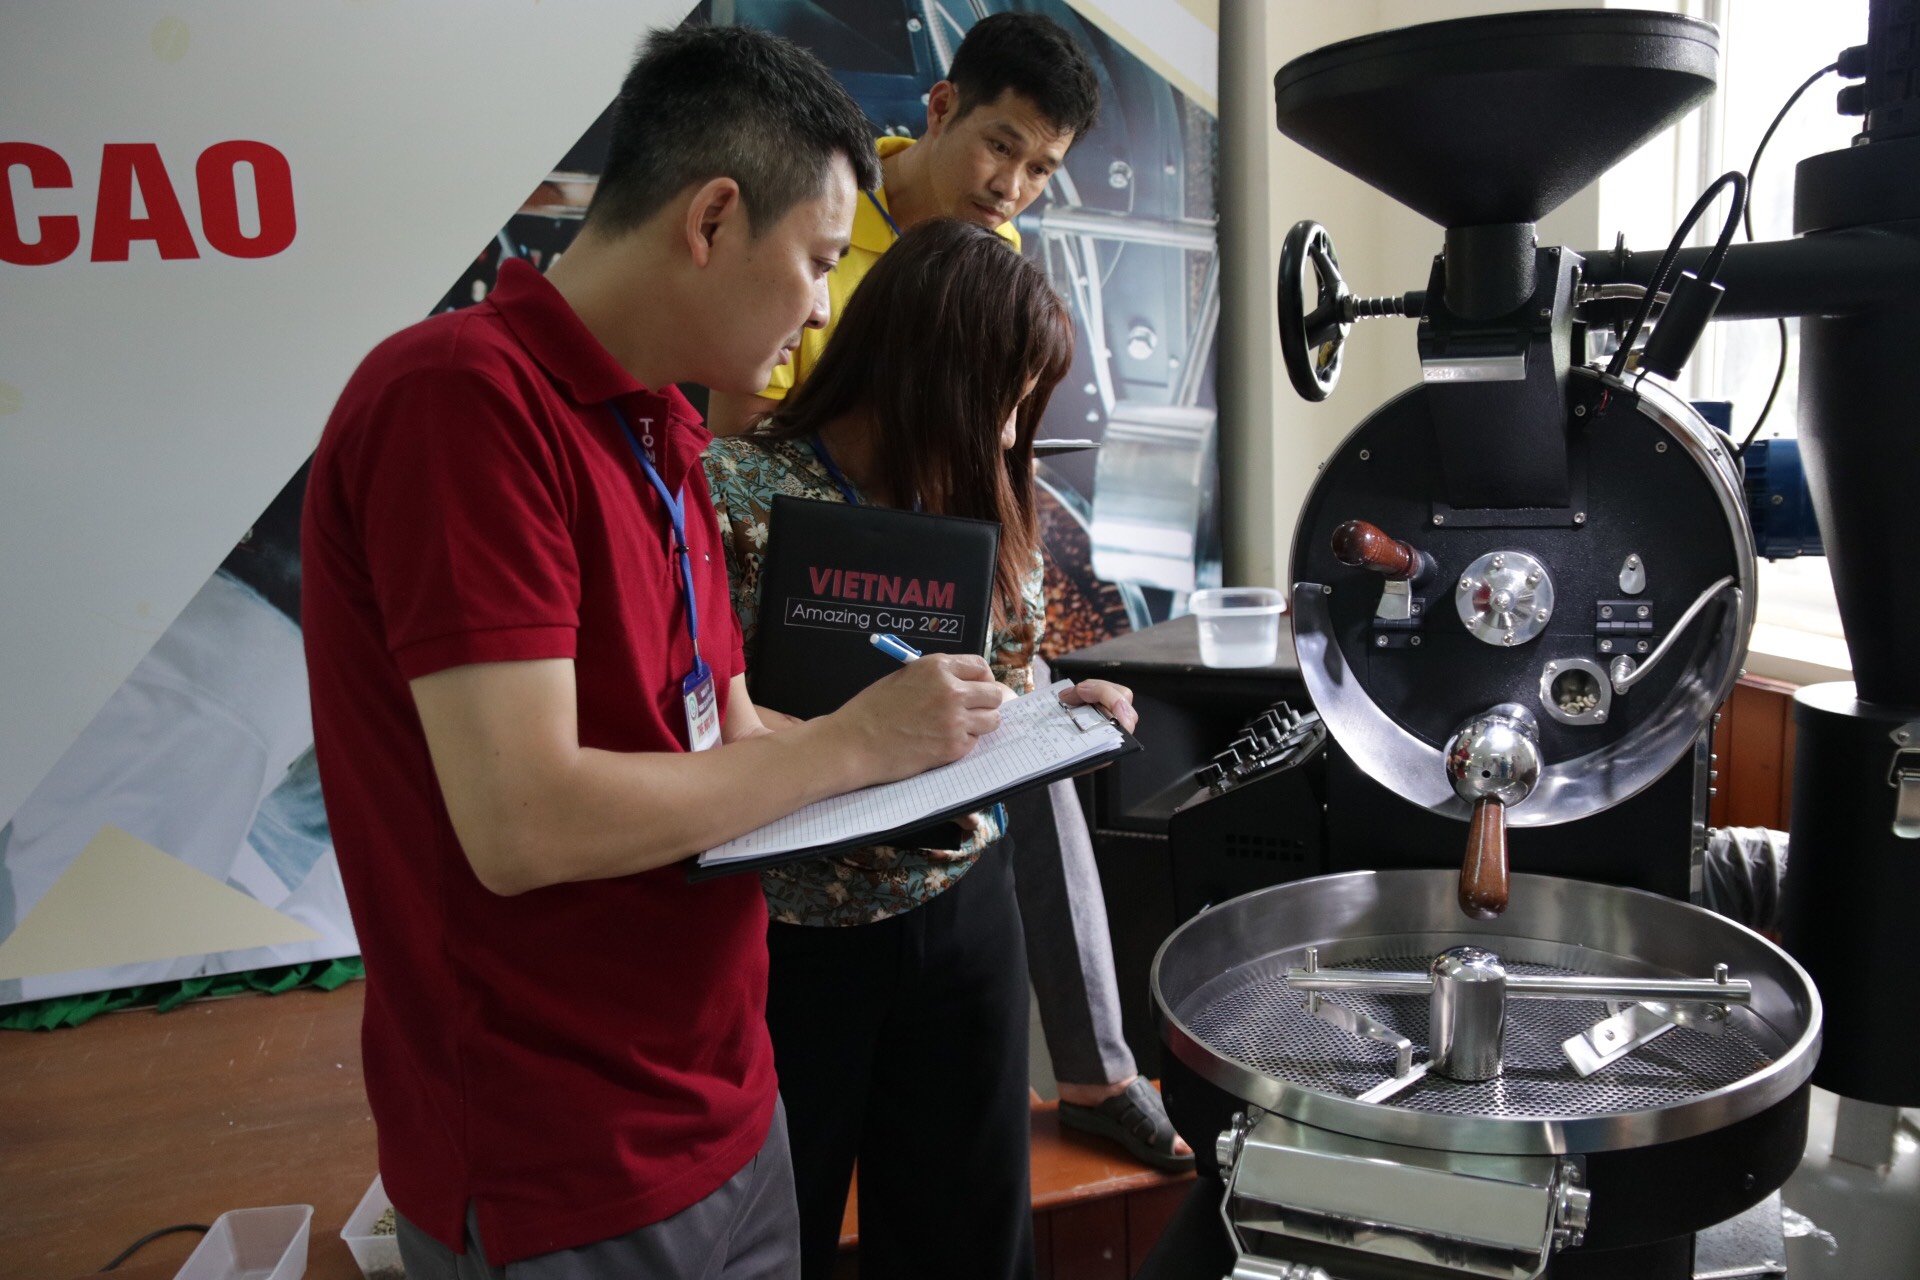 Phát động Cuộc thi Rang cà phê Việt Nam - năm 2022